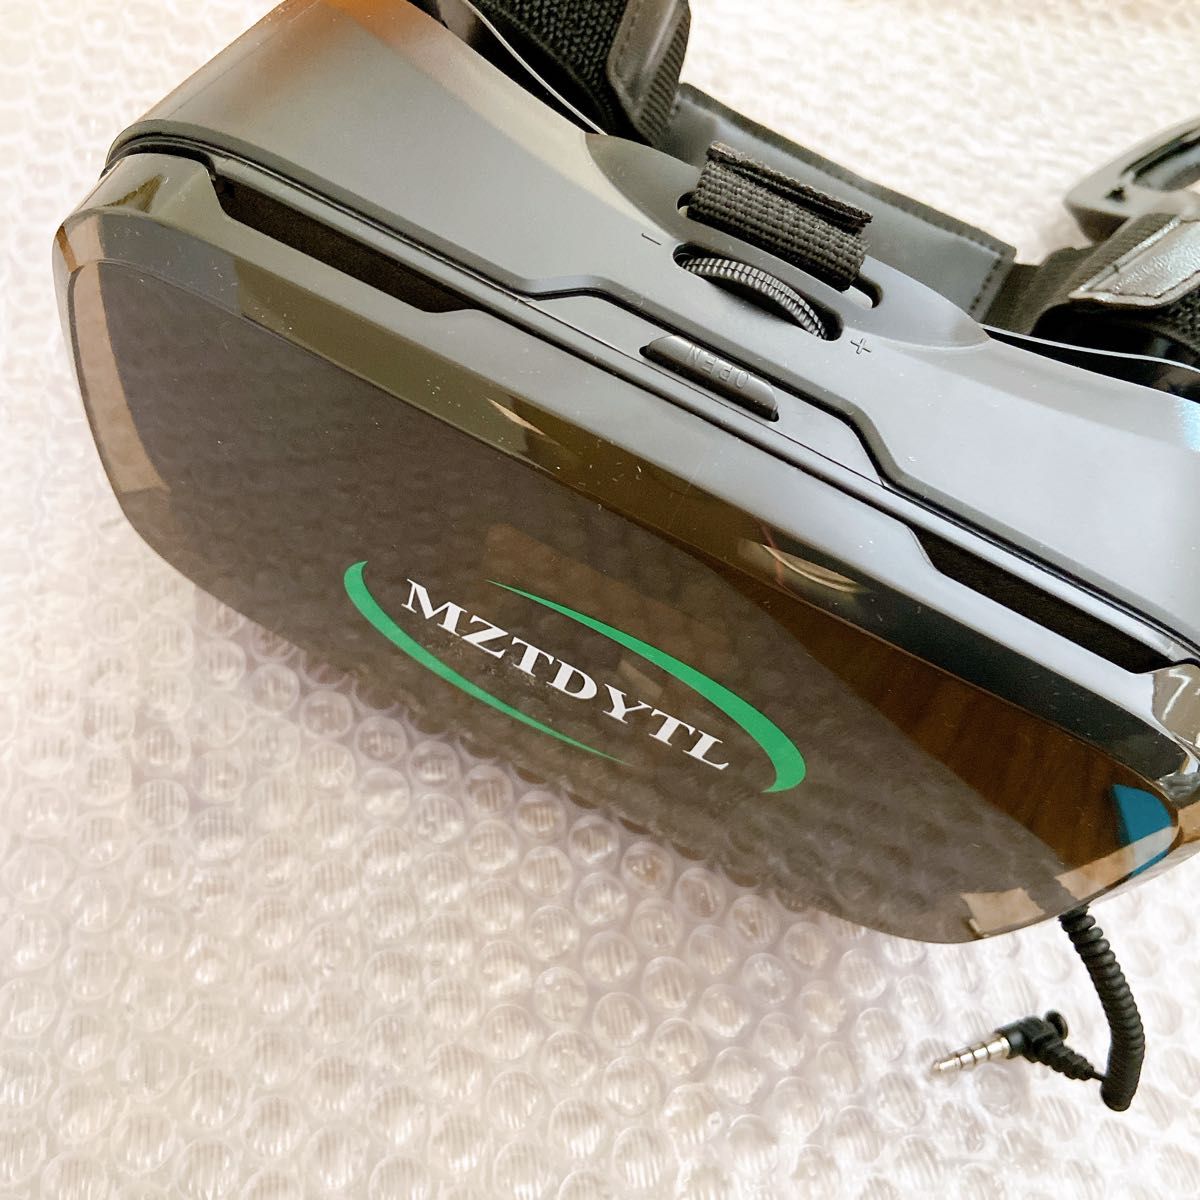 3D VRメガネ ブイアールメガネ コントローラー ヘルメットタイプ ゴーグル VRゴーグル VR インカム ハンディレーヴェ